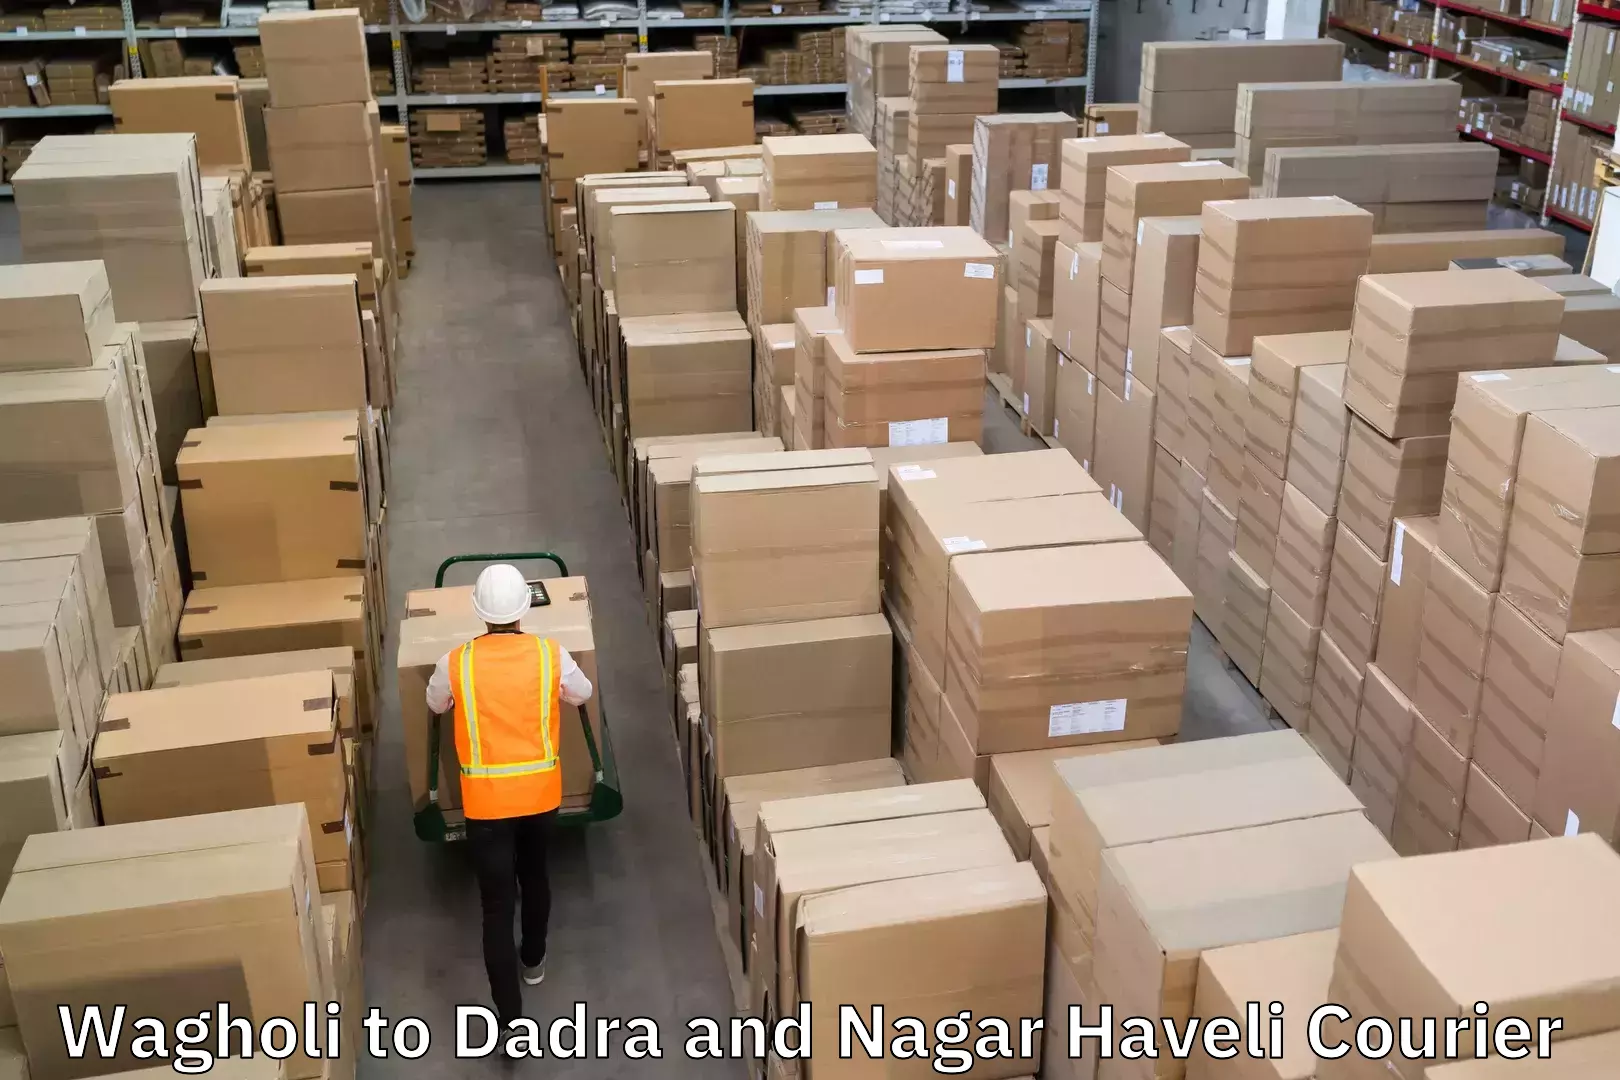 Global shipping solutions Wagholi to Dadra and Nagar Haveli